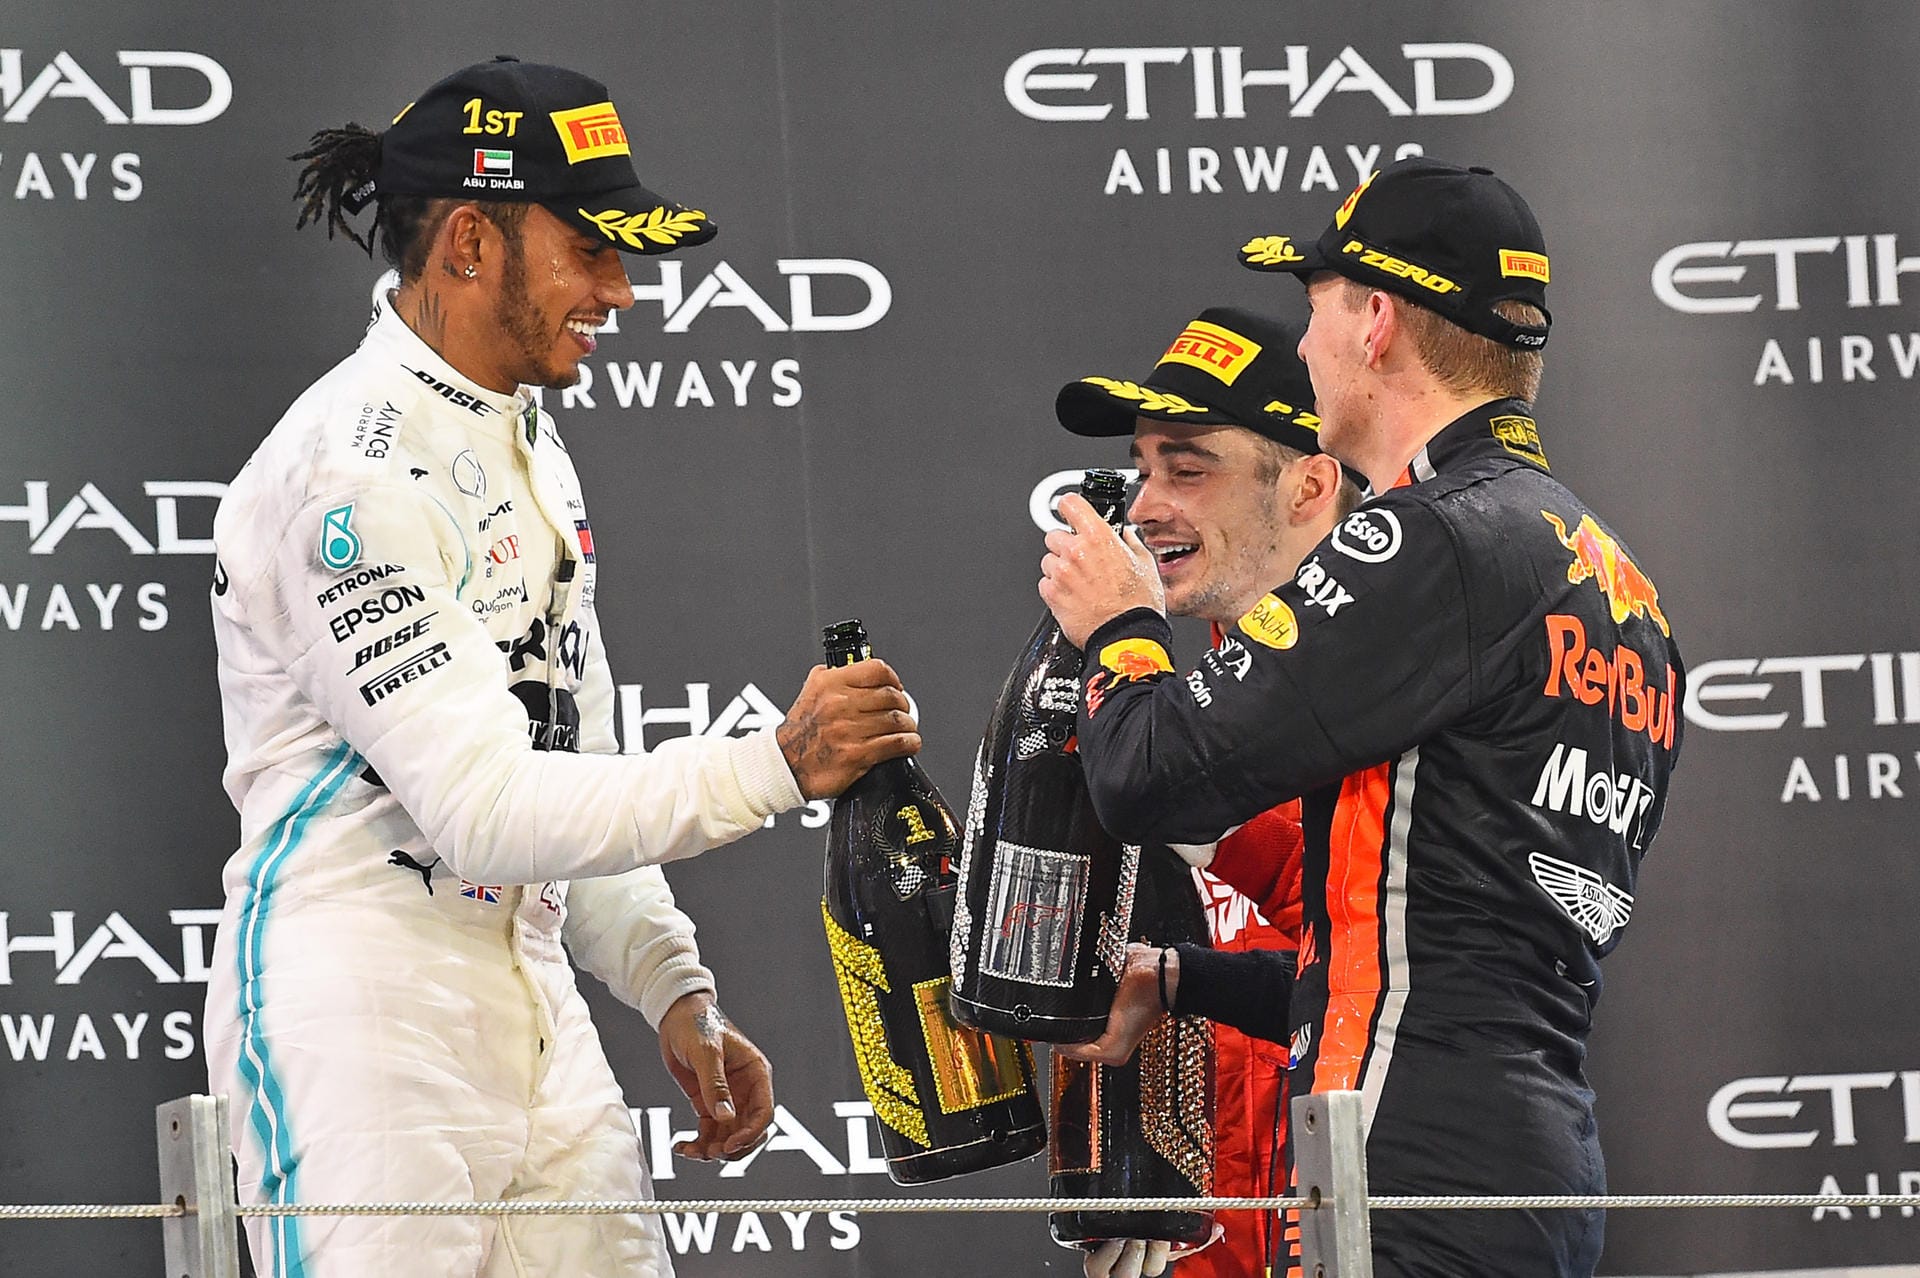 AS (Spanien): "Hamilton gewinnt locker in Abu Dhabi vor Verstappen und Leclerc. Niemand leistete Gegenwehr, Hamilton durfte sich richtig austoben, er sitzt im Olymp der Formel 1. Sebastian Vettel muss im neuen Jahr auf den Resetknopf drücken."